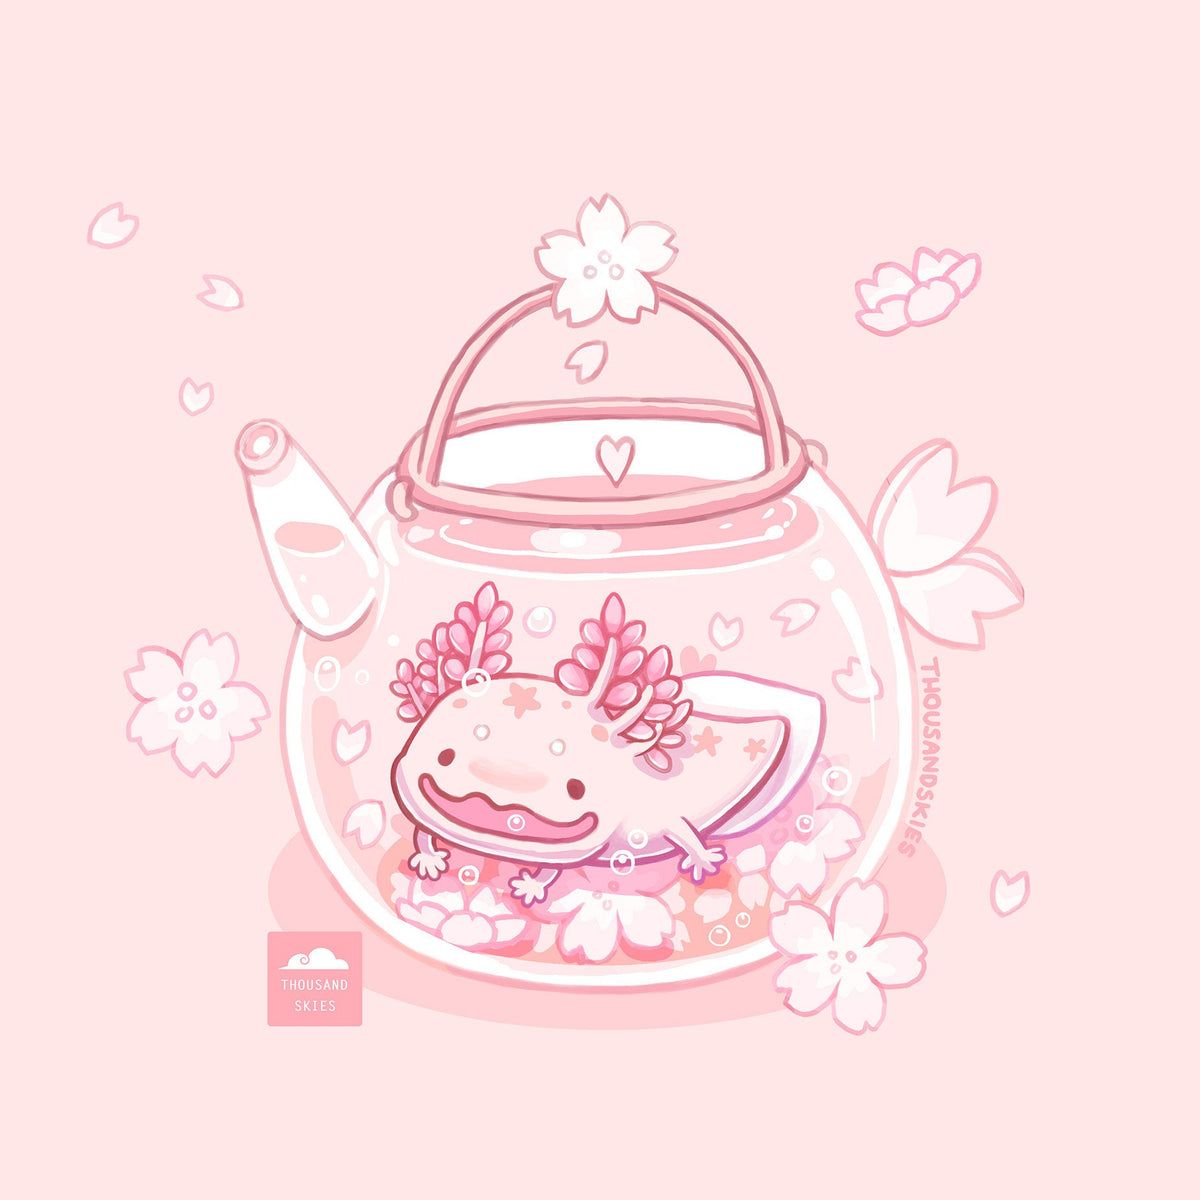 Share axolotl wallpaper best